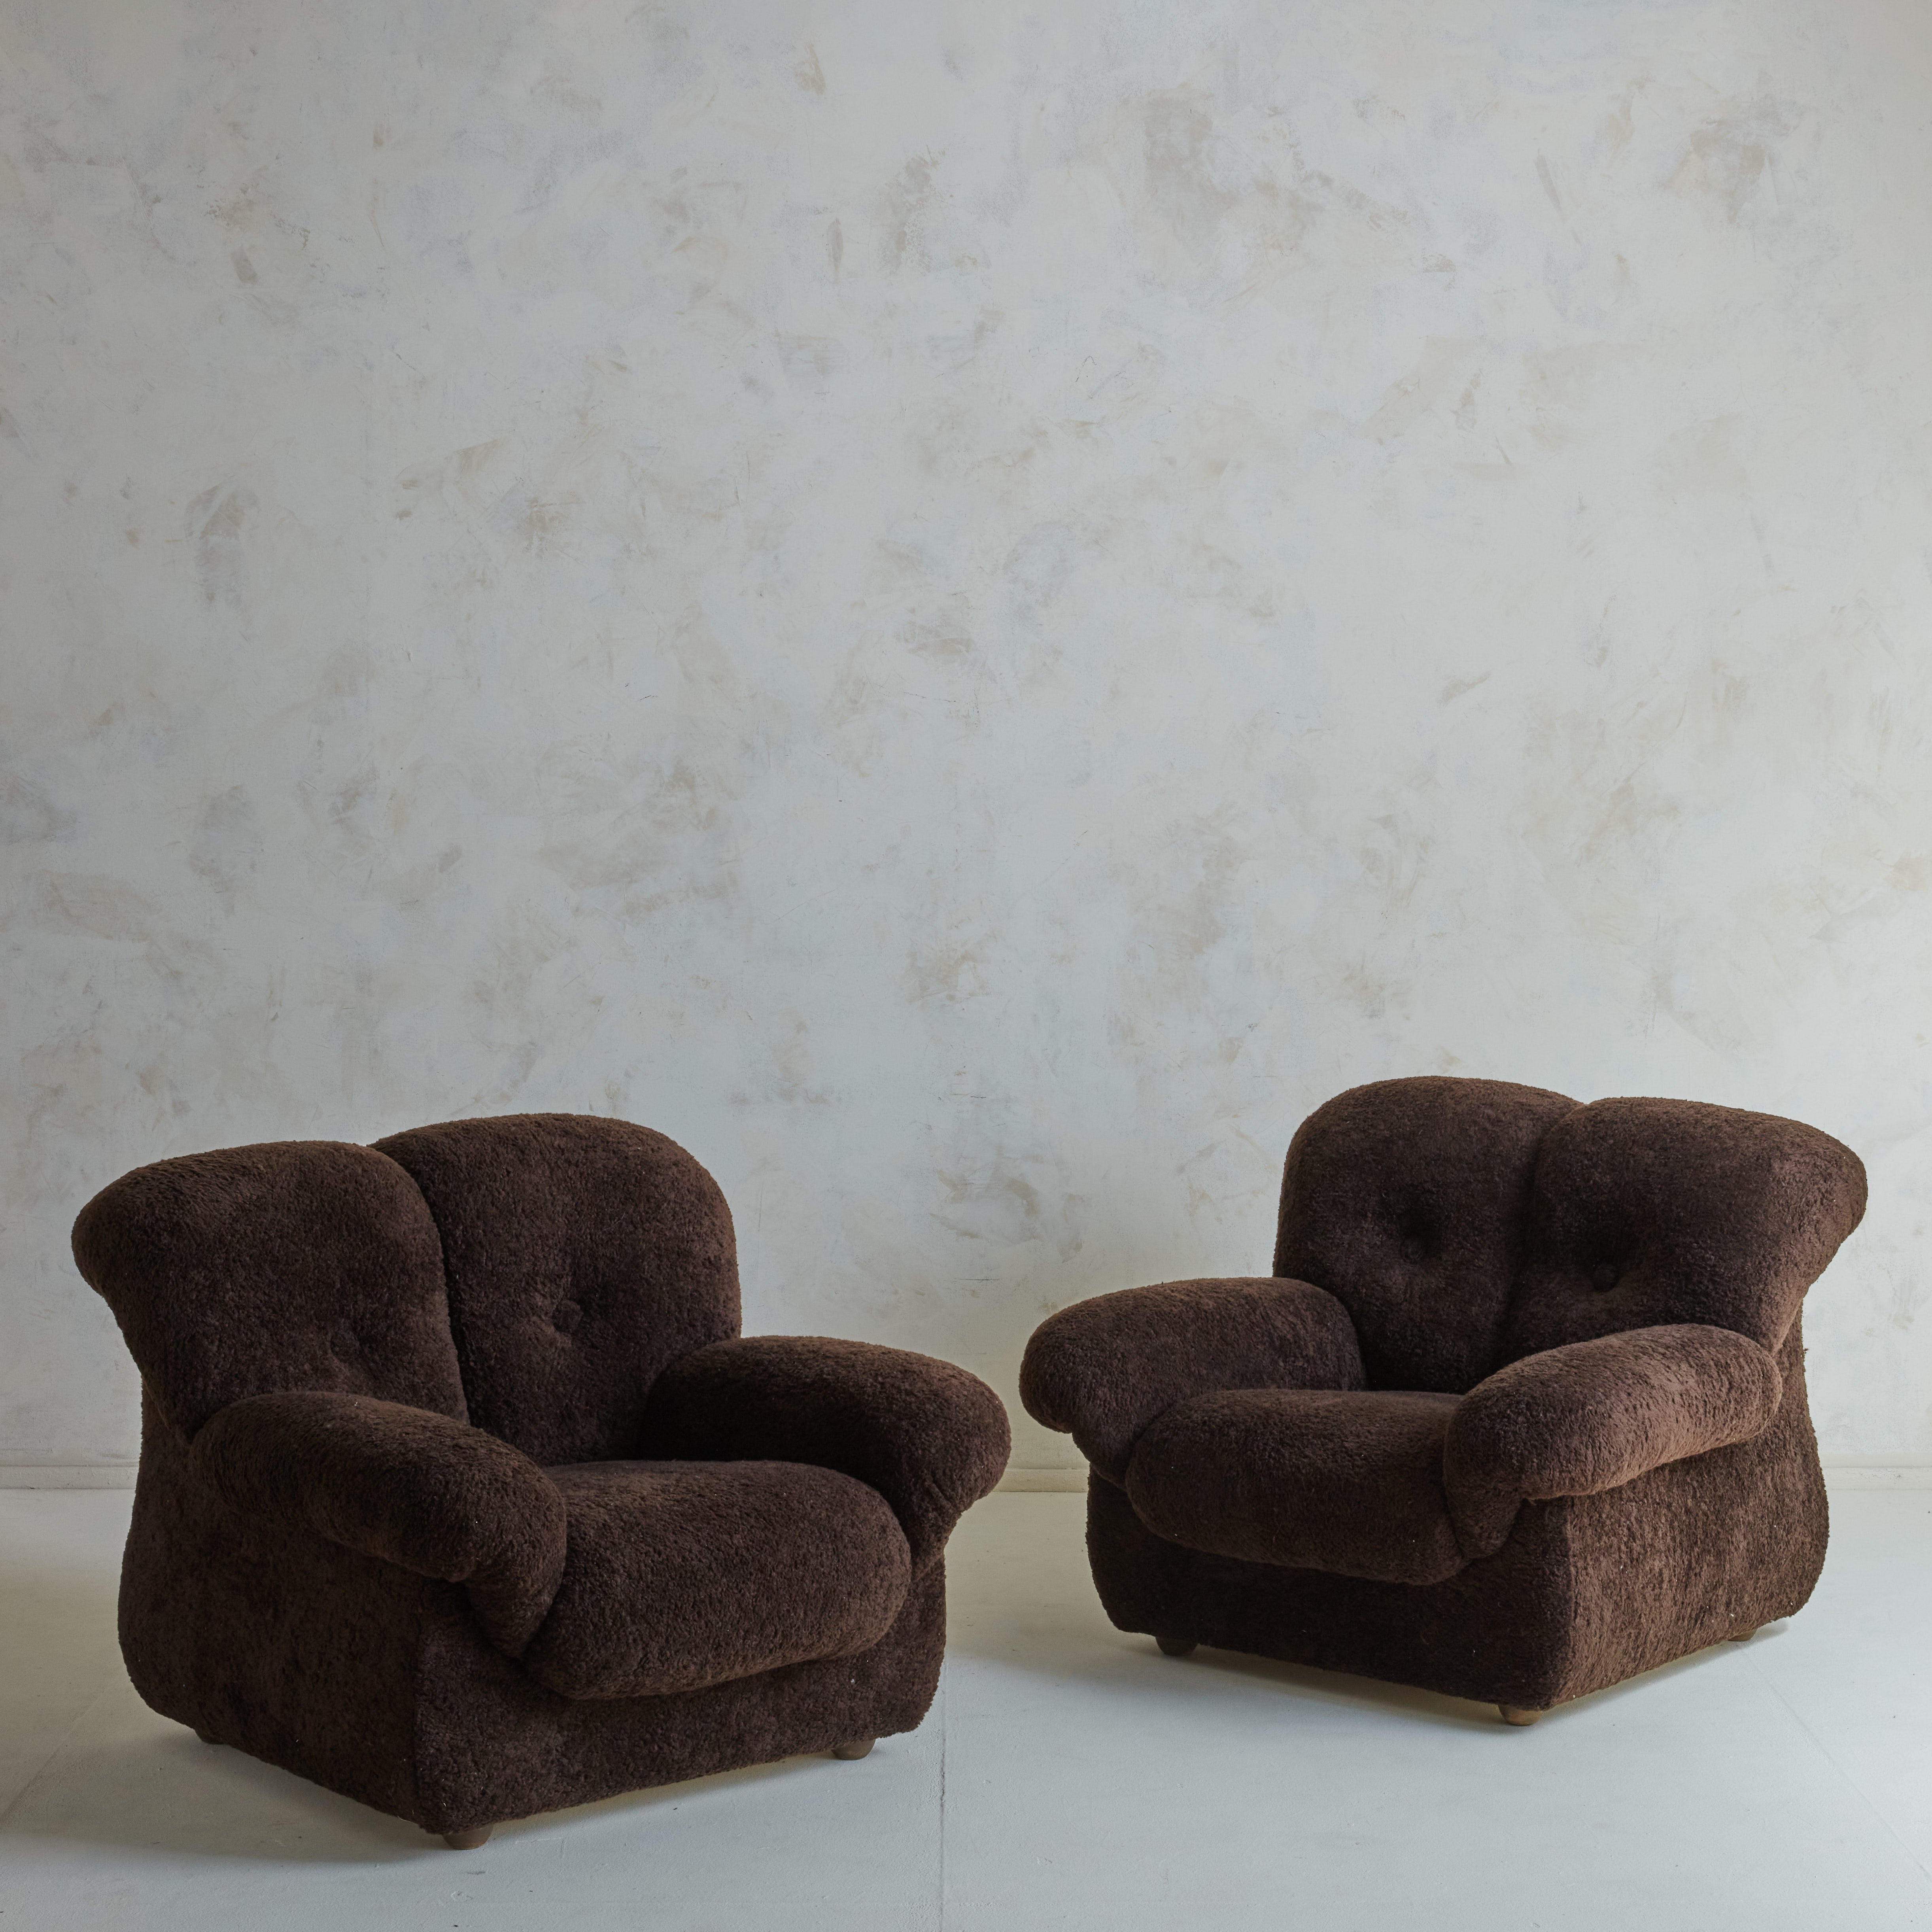 Grand fauteuil de salon italien surdimensionné en tissu teddy marron avec touffes de boutons. Le design classique des bras d'un canapé anglais traditionnel est adapté dans ces fauteuils anglais roulés. Le dossier de la chaise, qui semble presque